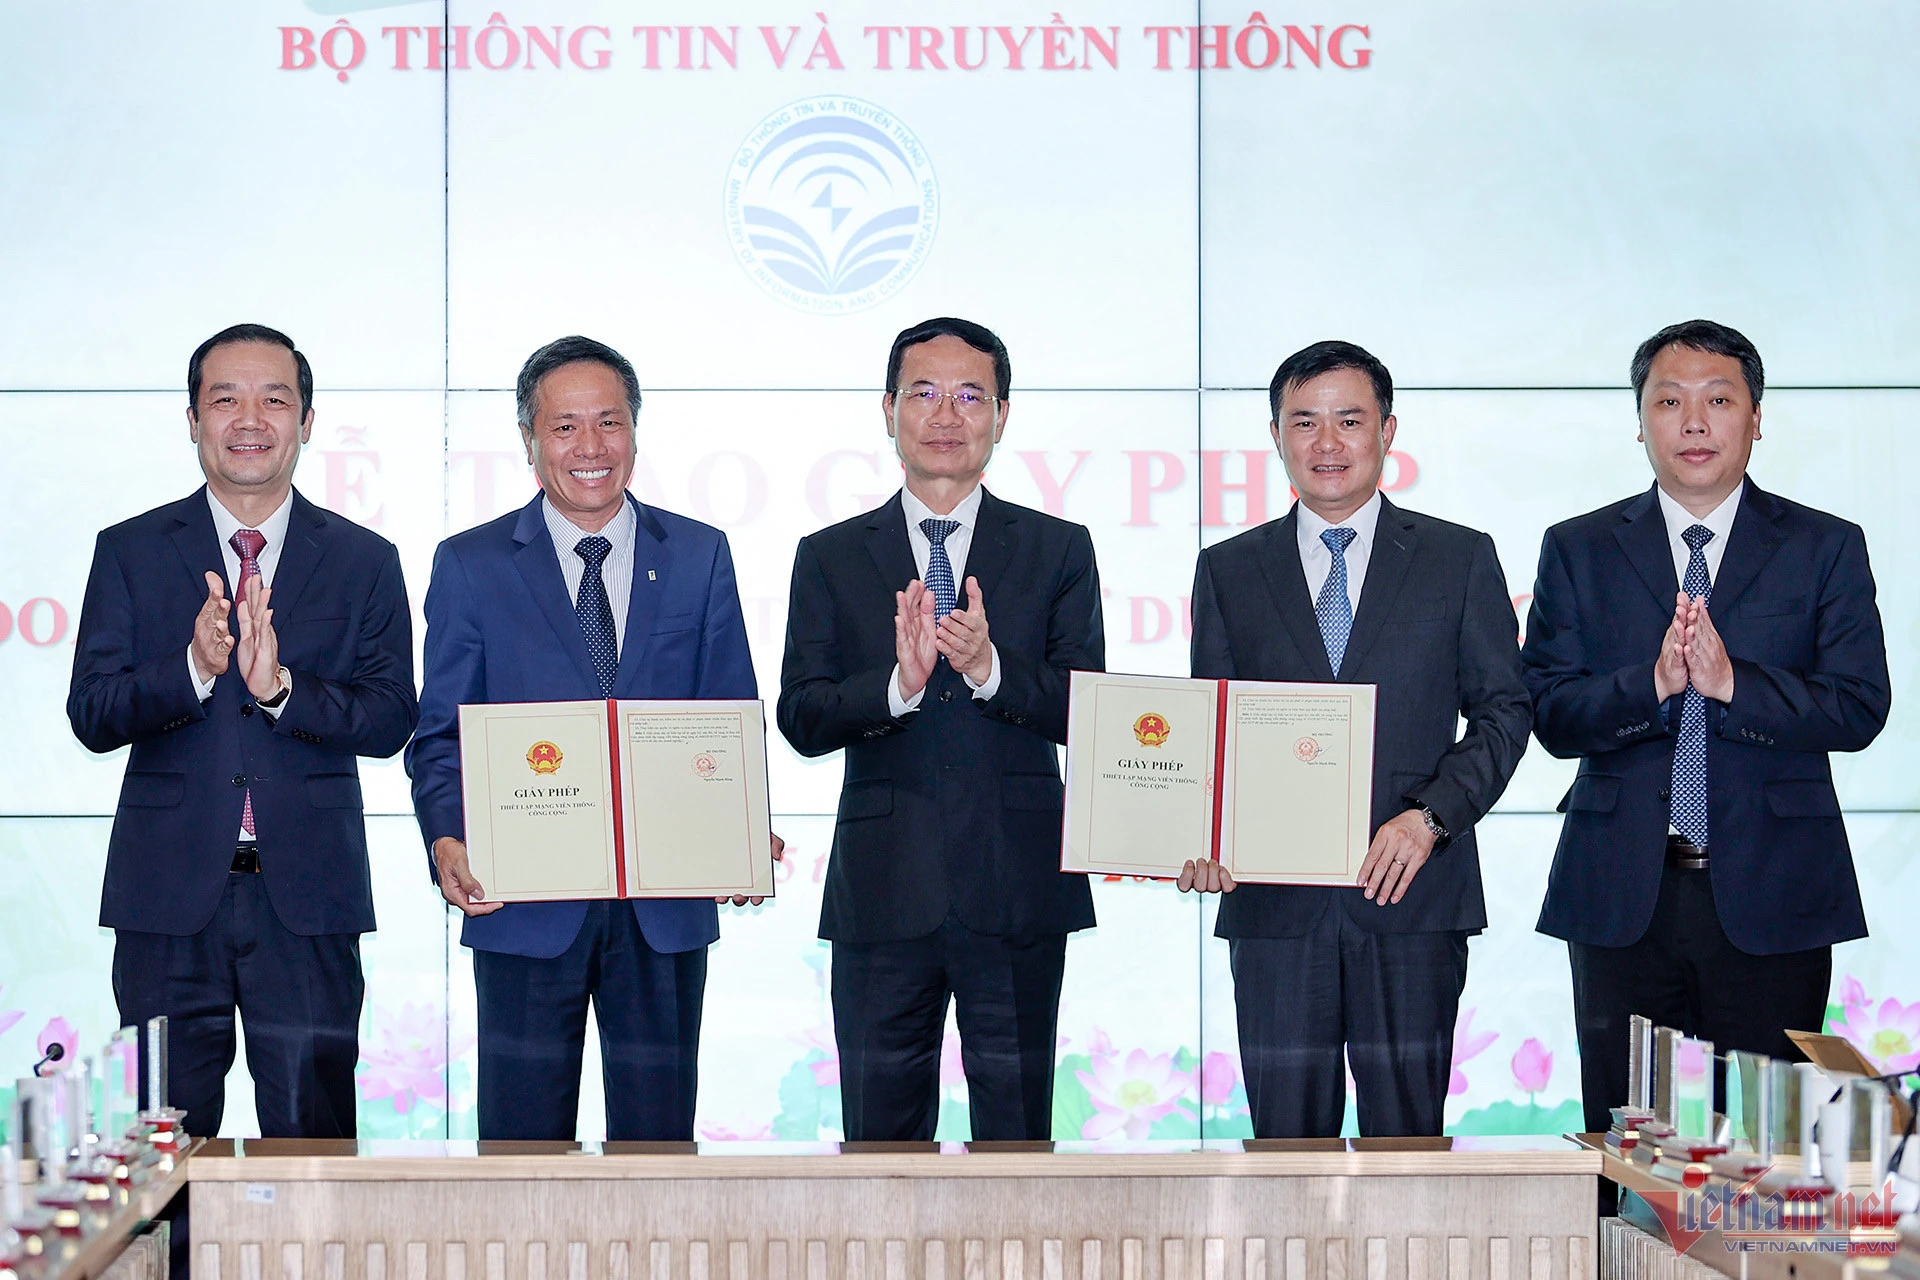 Bộ trưởng Nguyễn Mạnh Hùng chỉ rõ: Các nhà mạng cần vừa đầu tư thêm cho mạng 4G vừa đầu tư mới 5G thì mới đảm bảo được chất lượng. Ảnh minh họa: ĐT